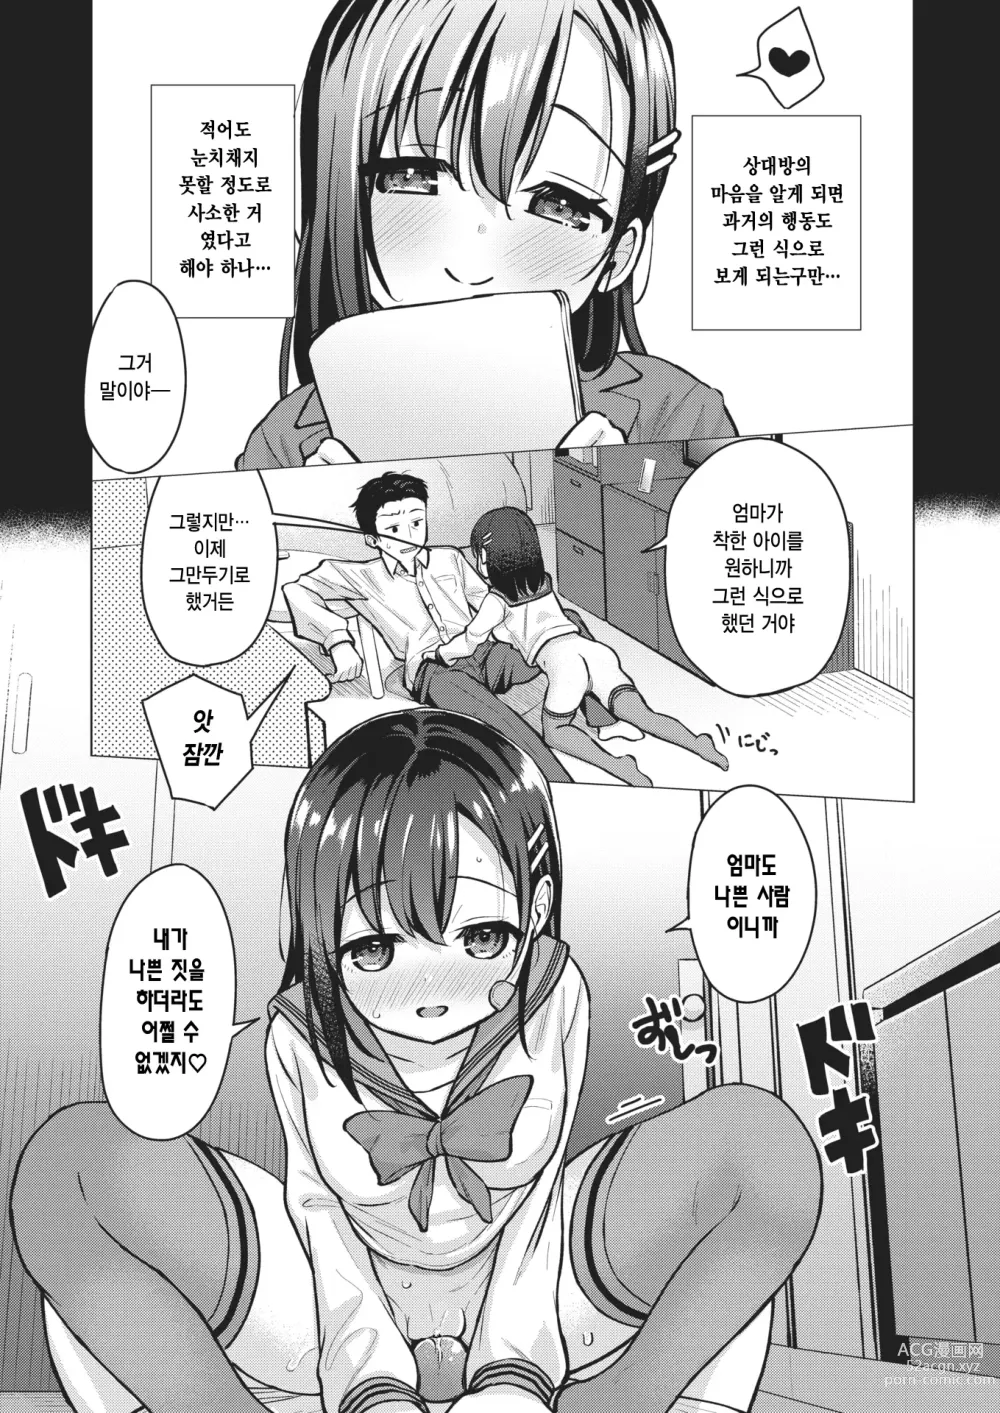 Page 7 of manga 문 앞의 분기점